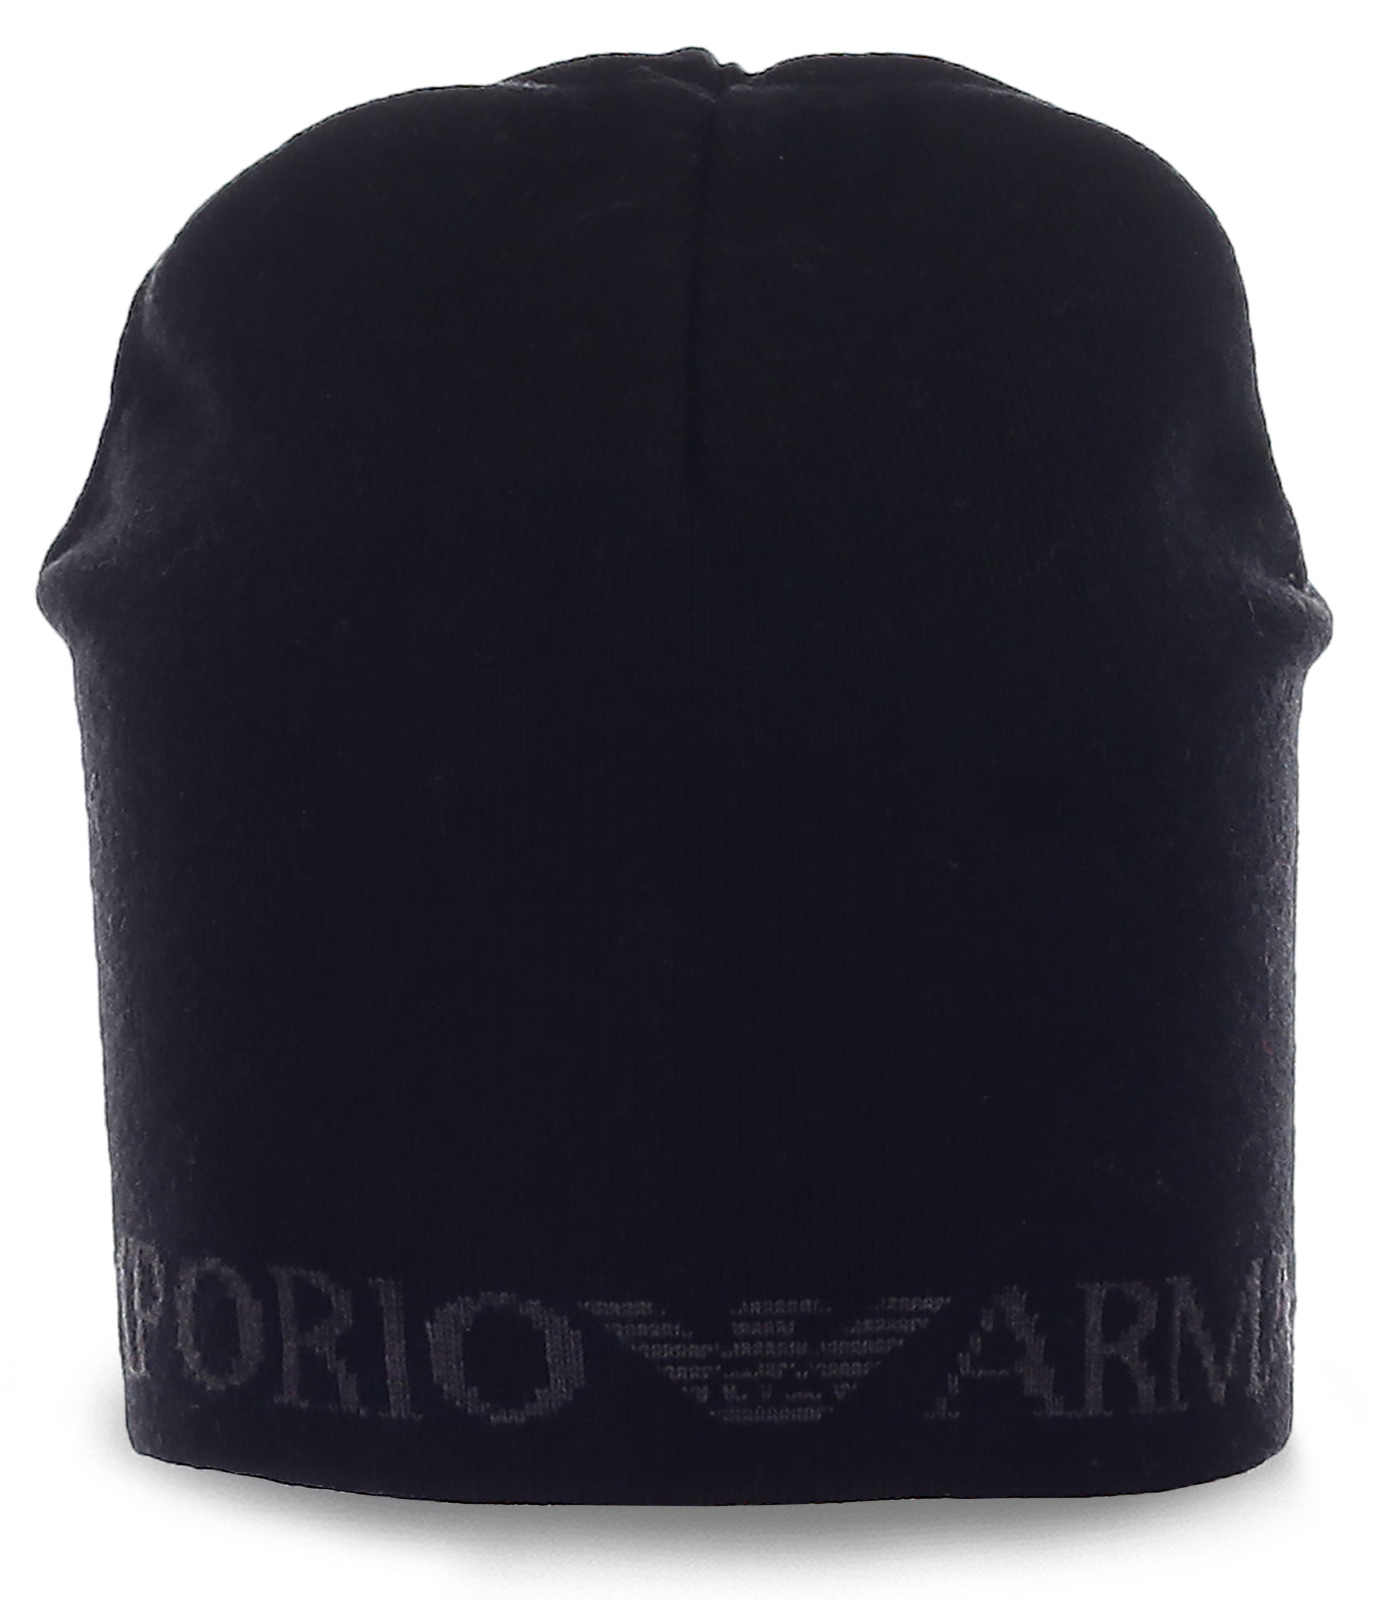 Заказать мужские шапки Armani недорого с доставкой